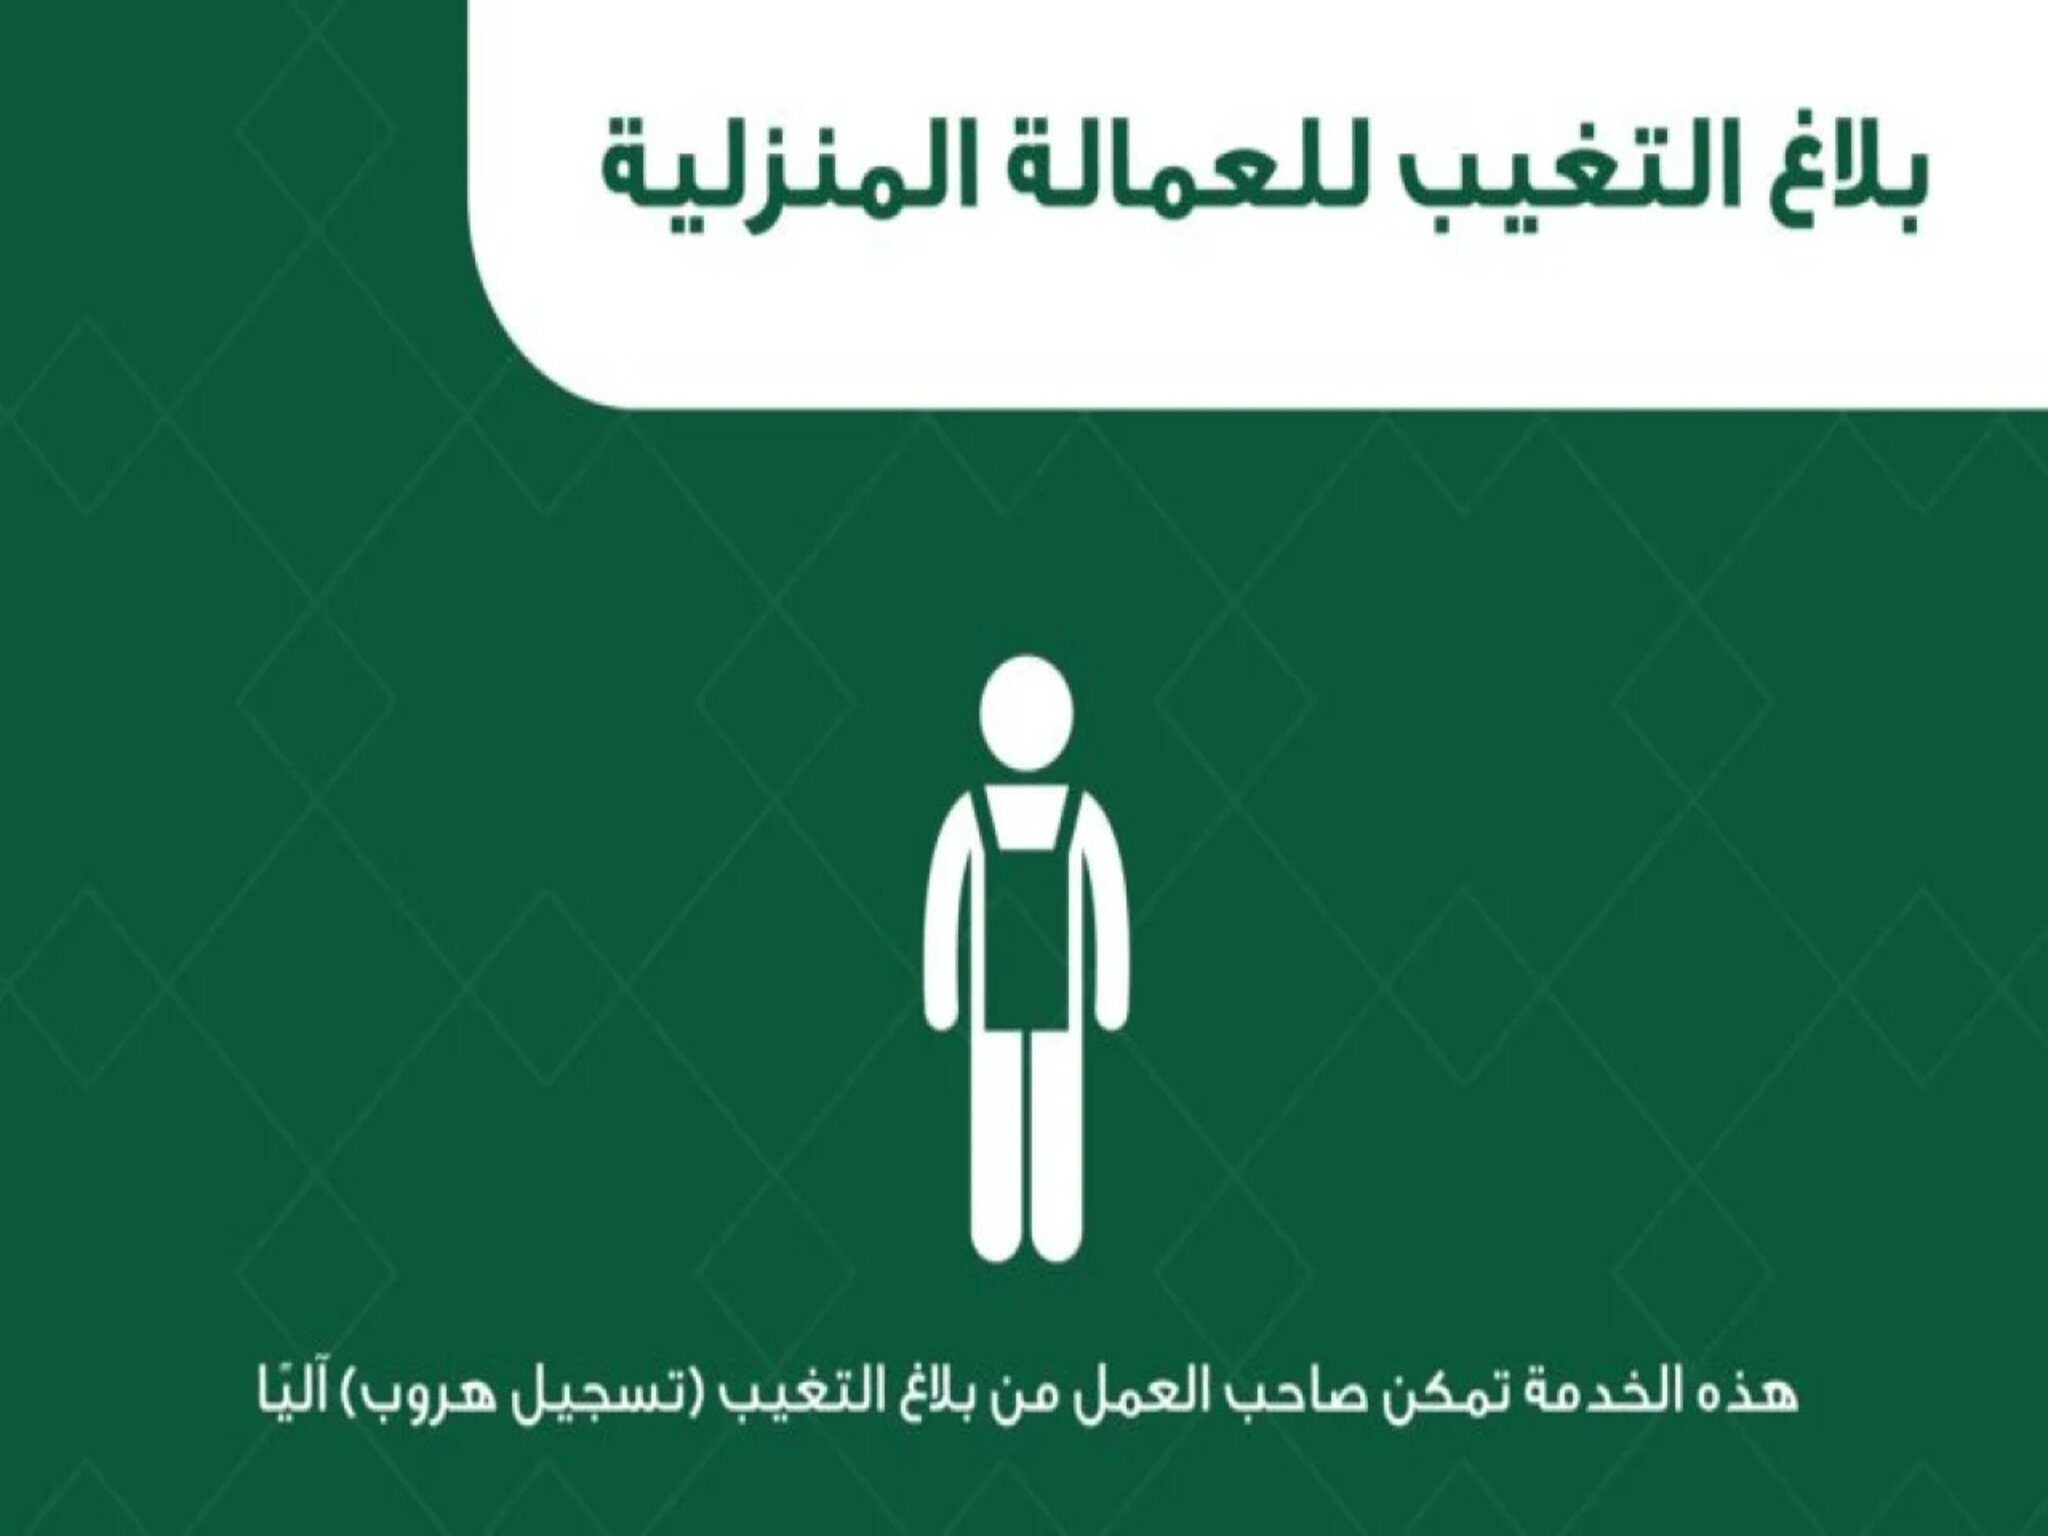 المملكة السعودية تعلن حصولها على عضوية المجلس الاقتصادي والاجتماعي (ECOSOC)